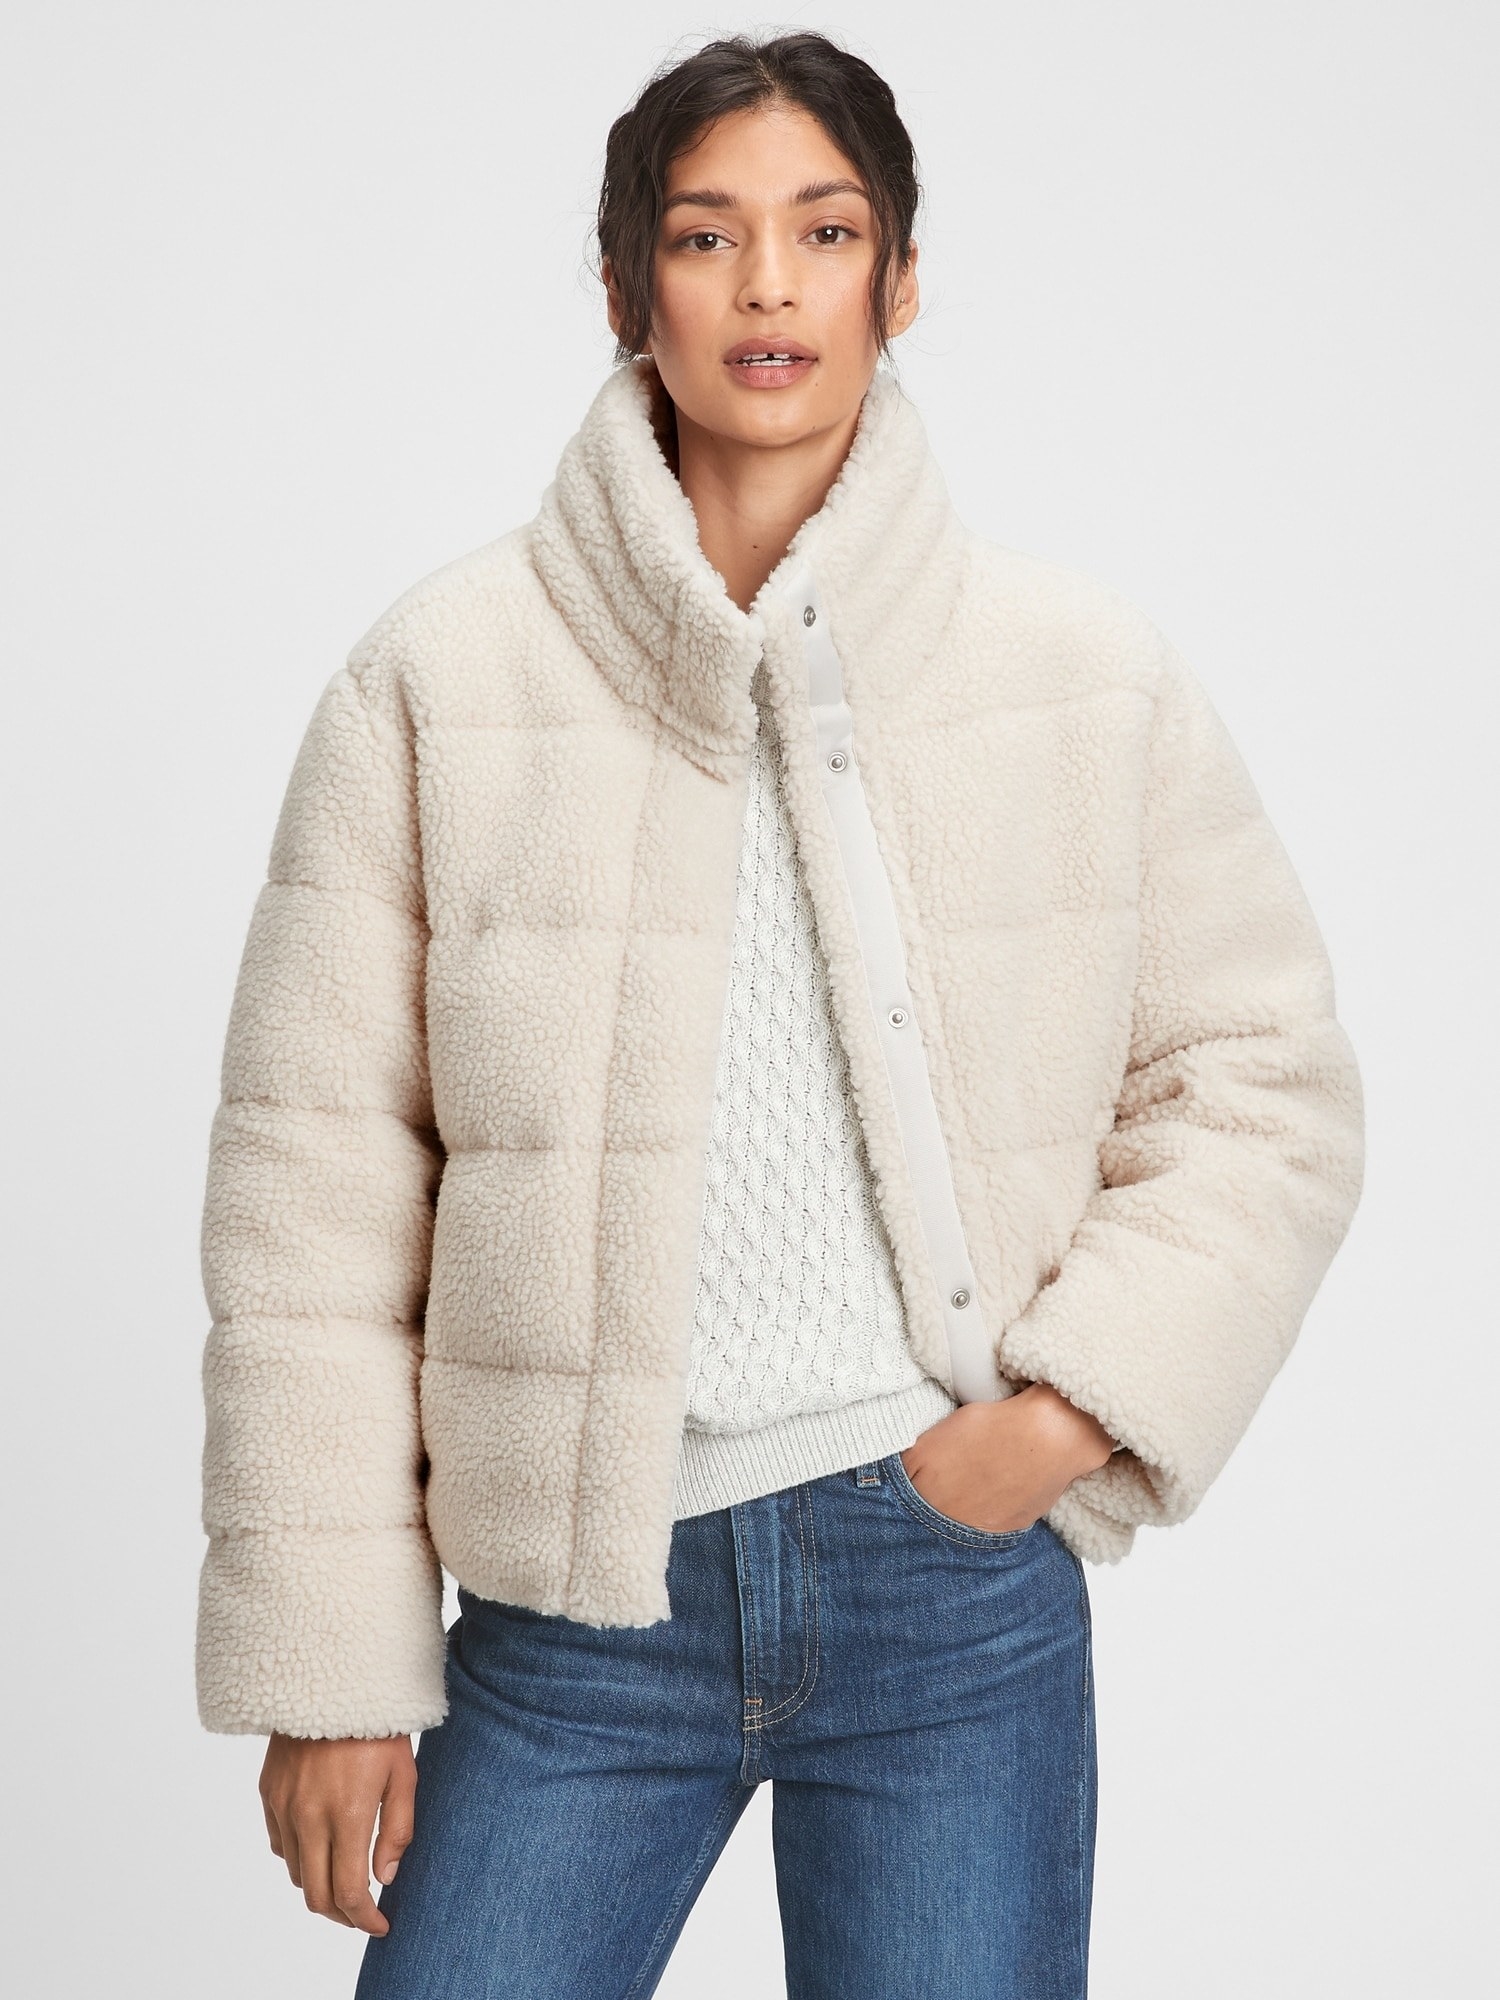 model in a white sherpa jacket